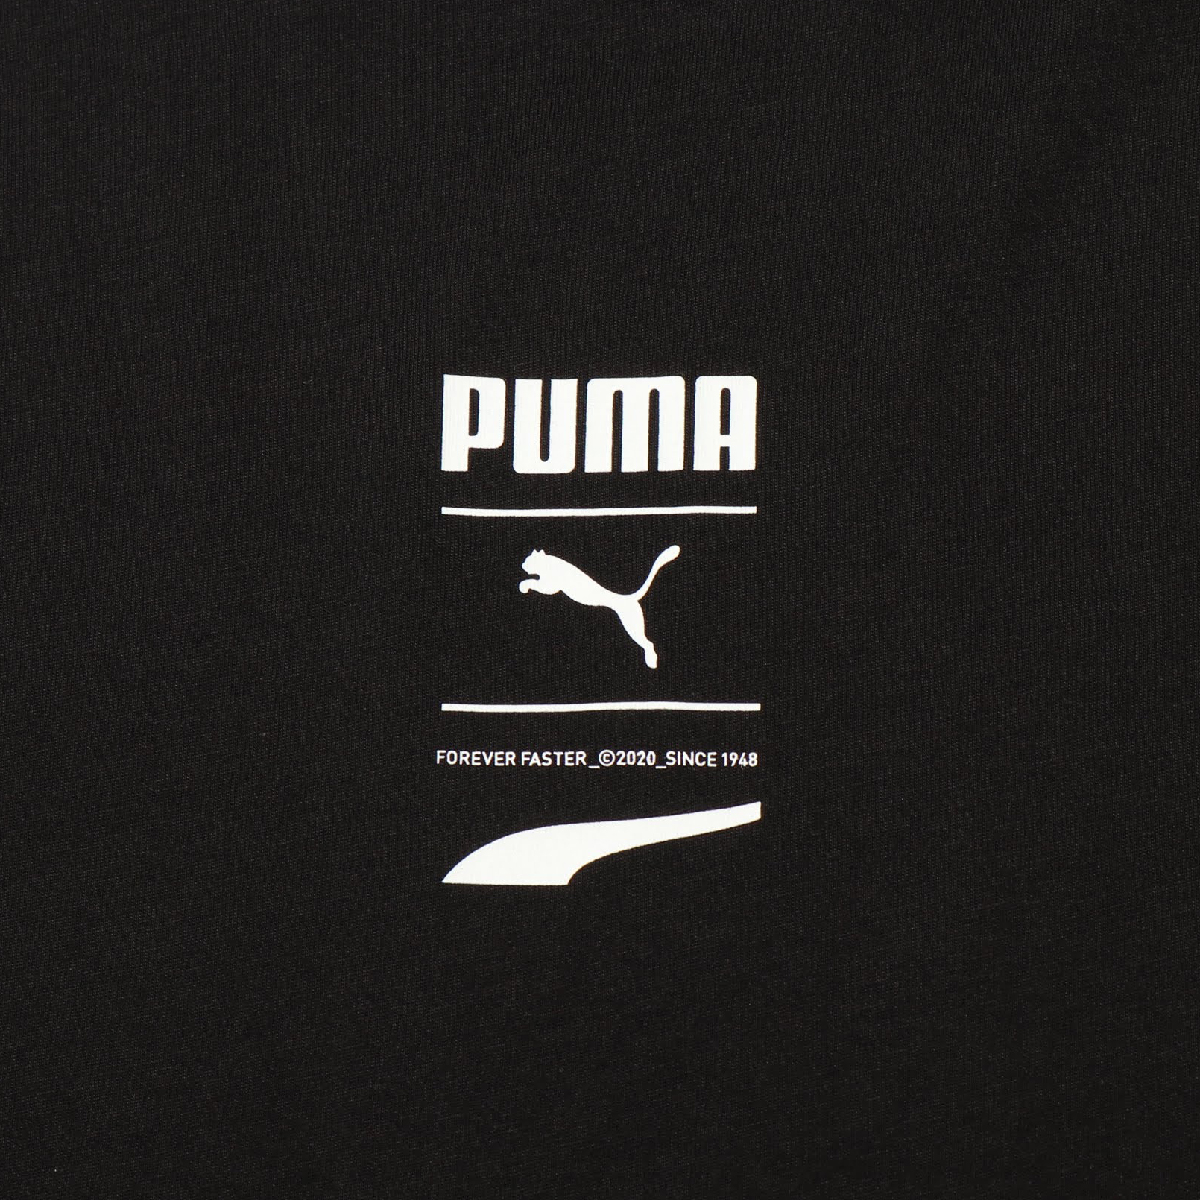 お取り寄せ商品 Puma Spring Recheck Pack Graphic Tee Wmns Cotton ティー Web限定 sp I リチェックパック Black レディース グラフィック 半袖tシャツ プーマ